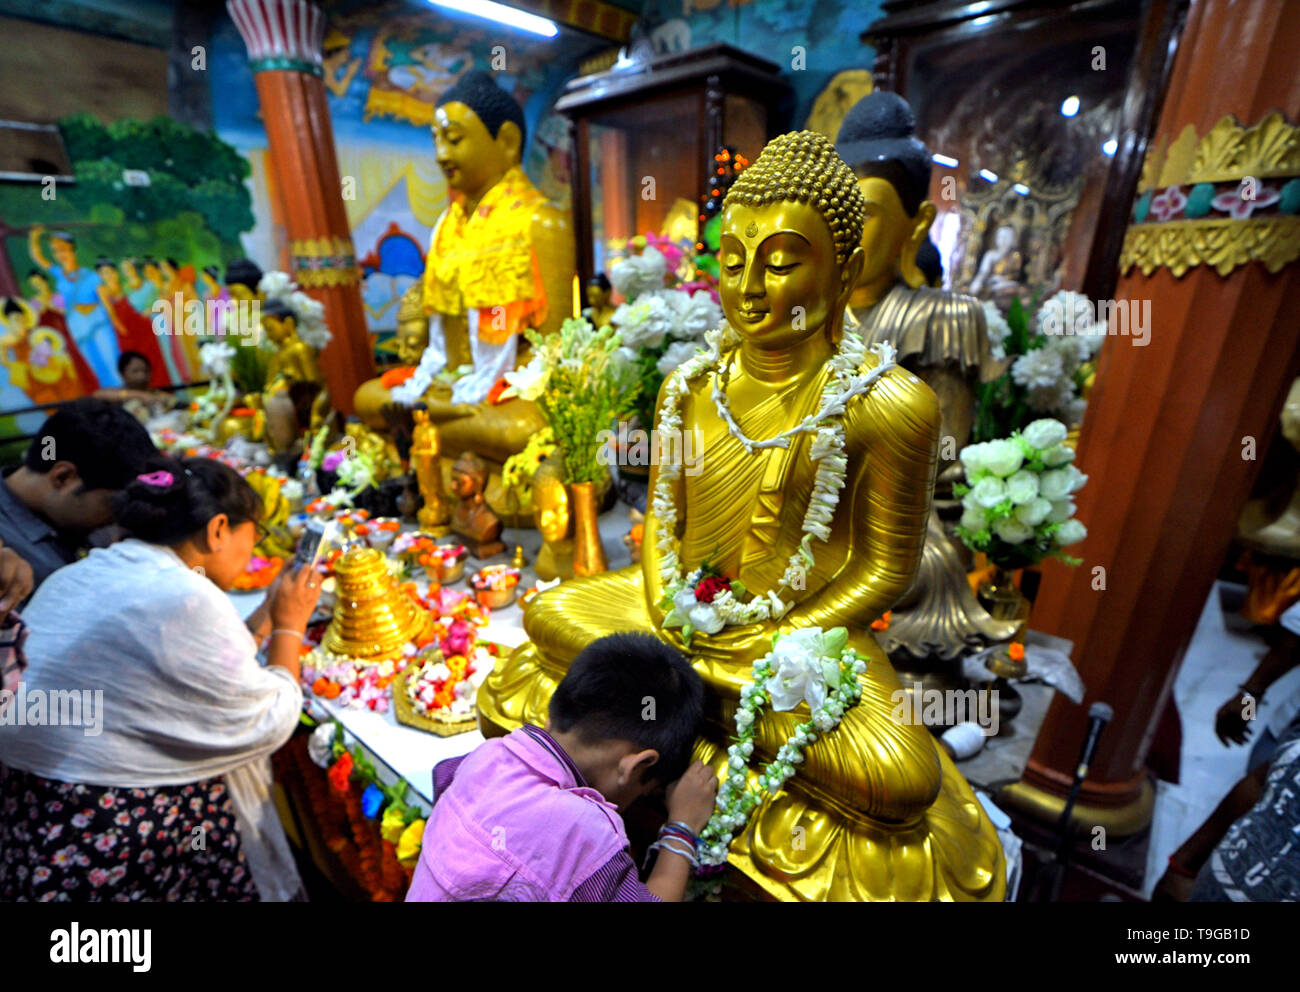 Un bambino visto pregare davanti alla statua di Buddha Signore durante il Buddha Purnima preghiere. Il Buddha il compleanno è una vacanza tradizionalmente celebrato nella maggior parte dell Asia orientale per commemorare la nascita del Principe Siddharta Gautama o Gautama Buddha che è il fondatore del buddhismo. Foto Stock